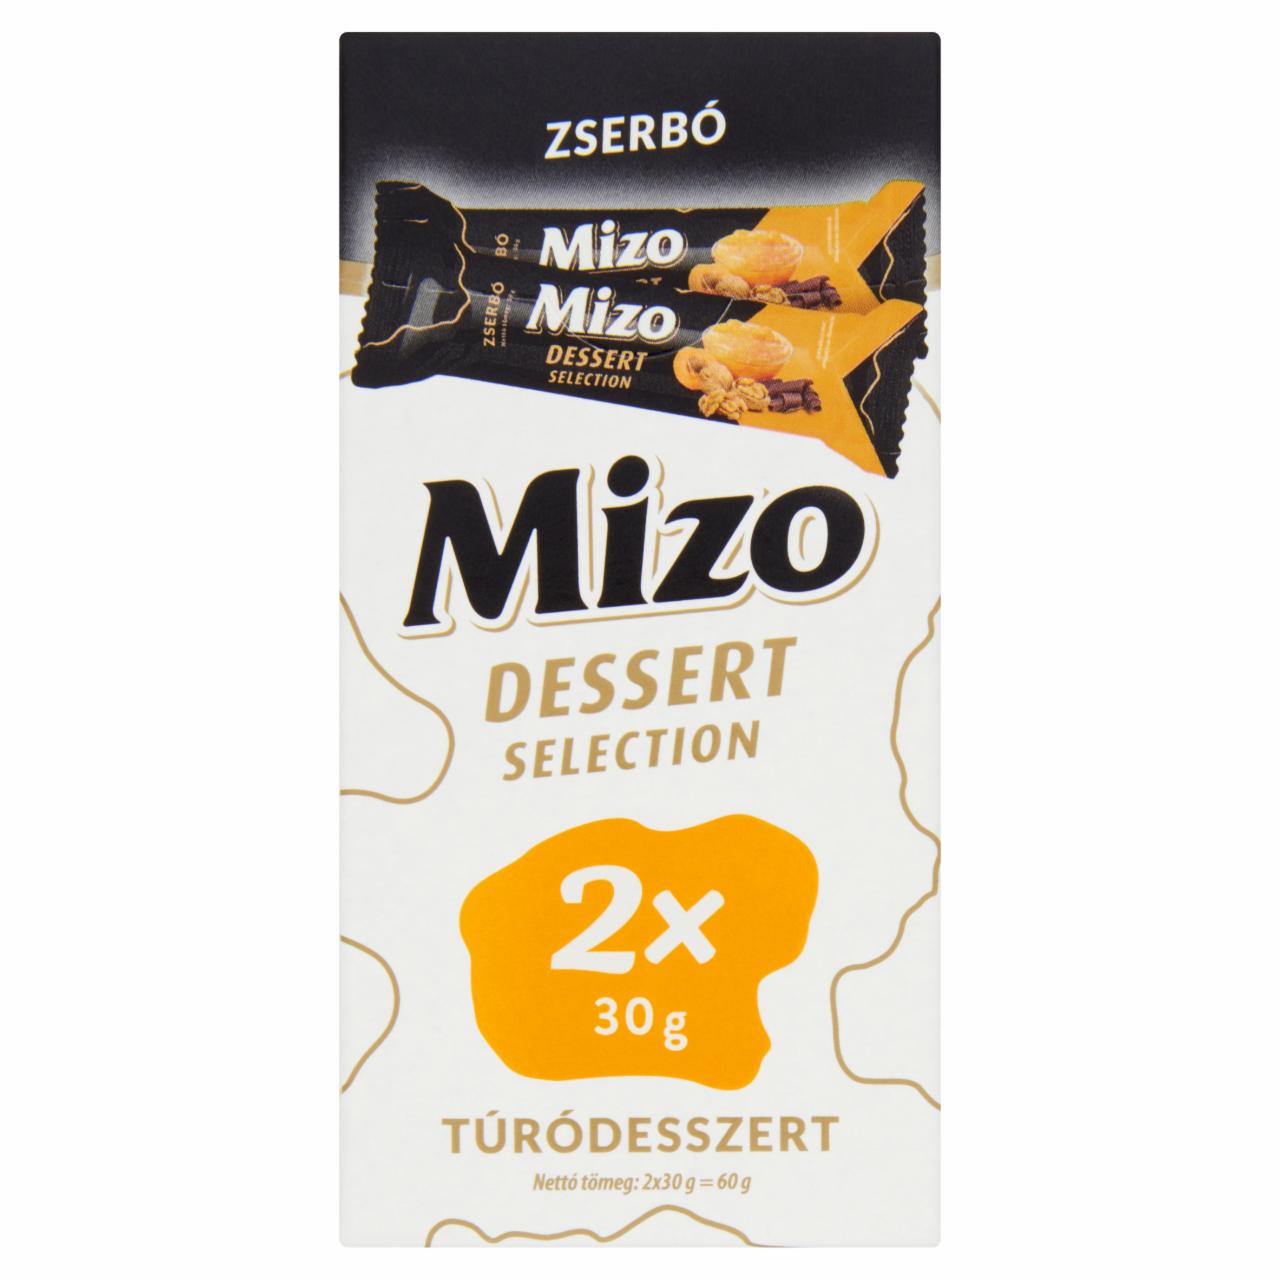 Képek - Mizo Dessert Selection Zserbó túródesszert 2 x 30 g